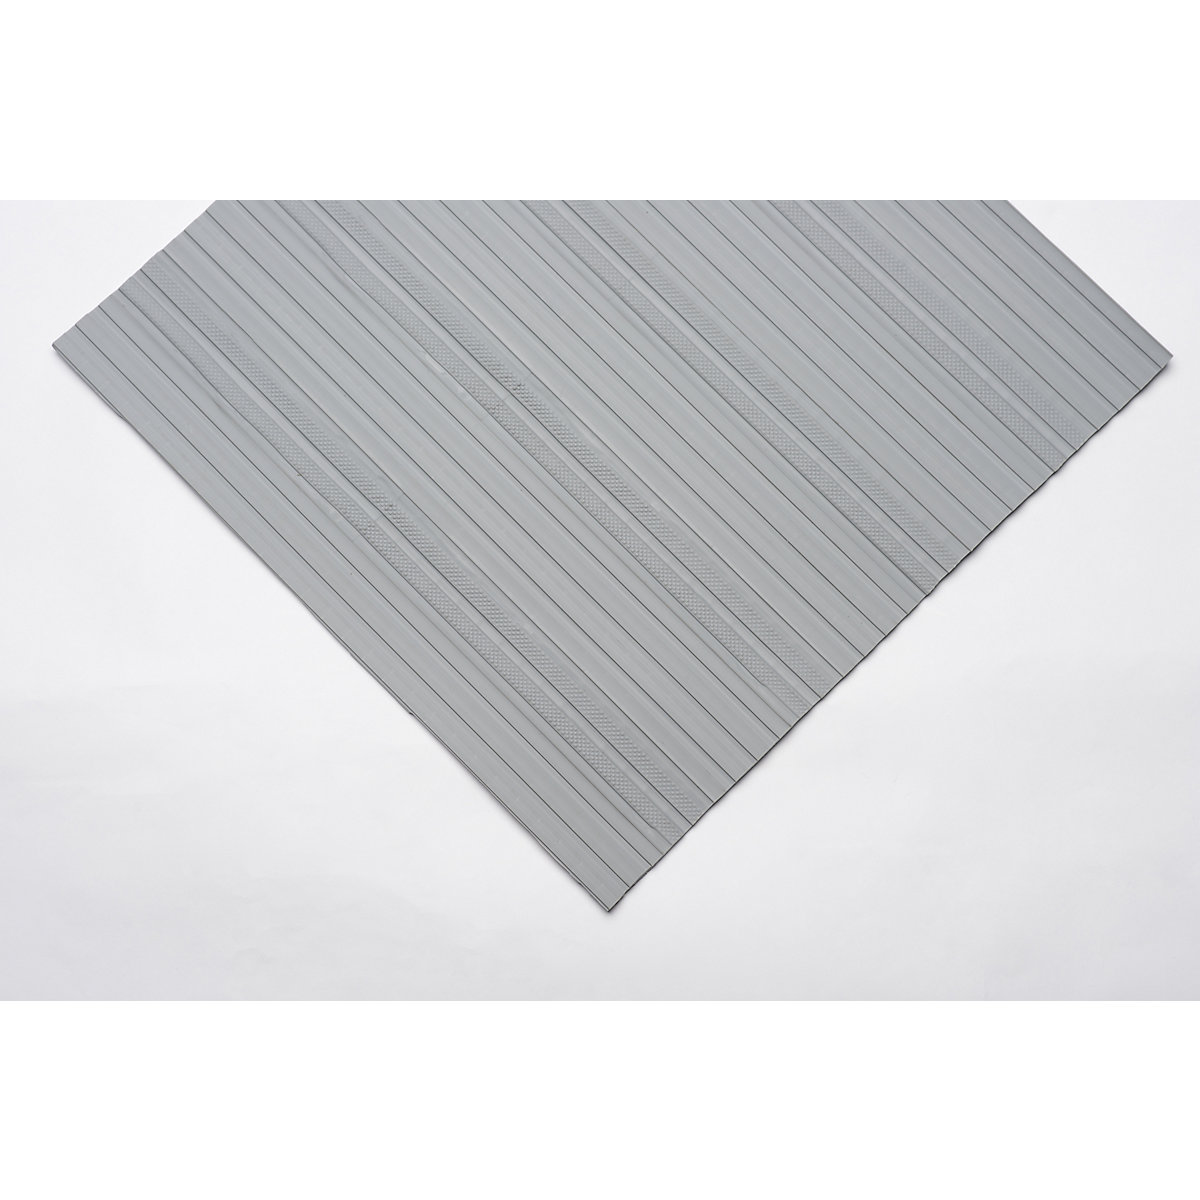 Tapis souple en PVC, à surface pleine, rouleau de 10 m, gris, largeur 600 mm-6